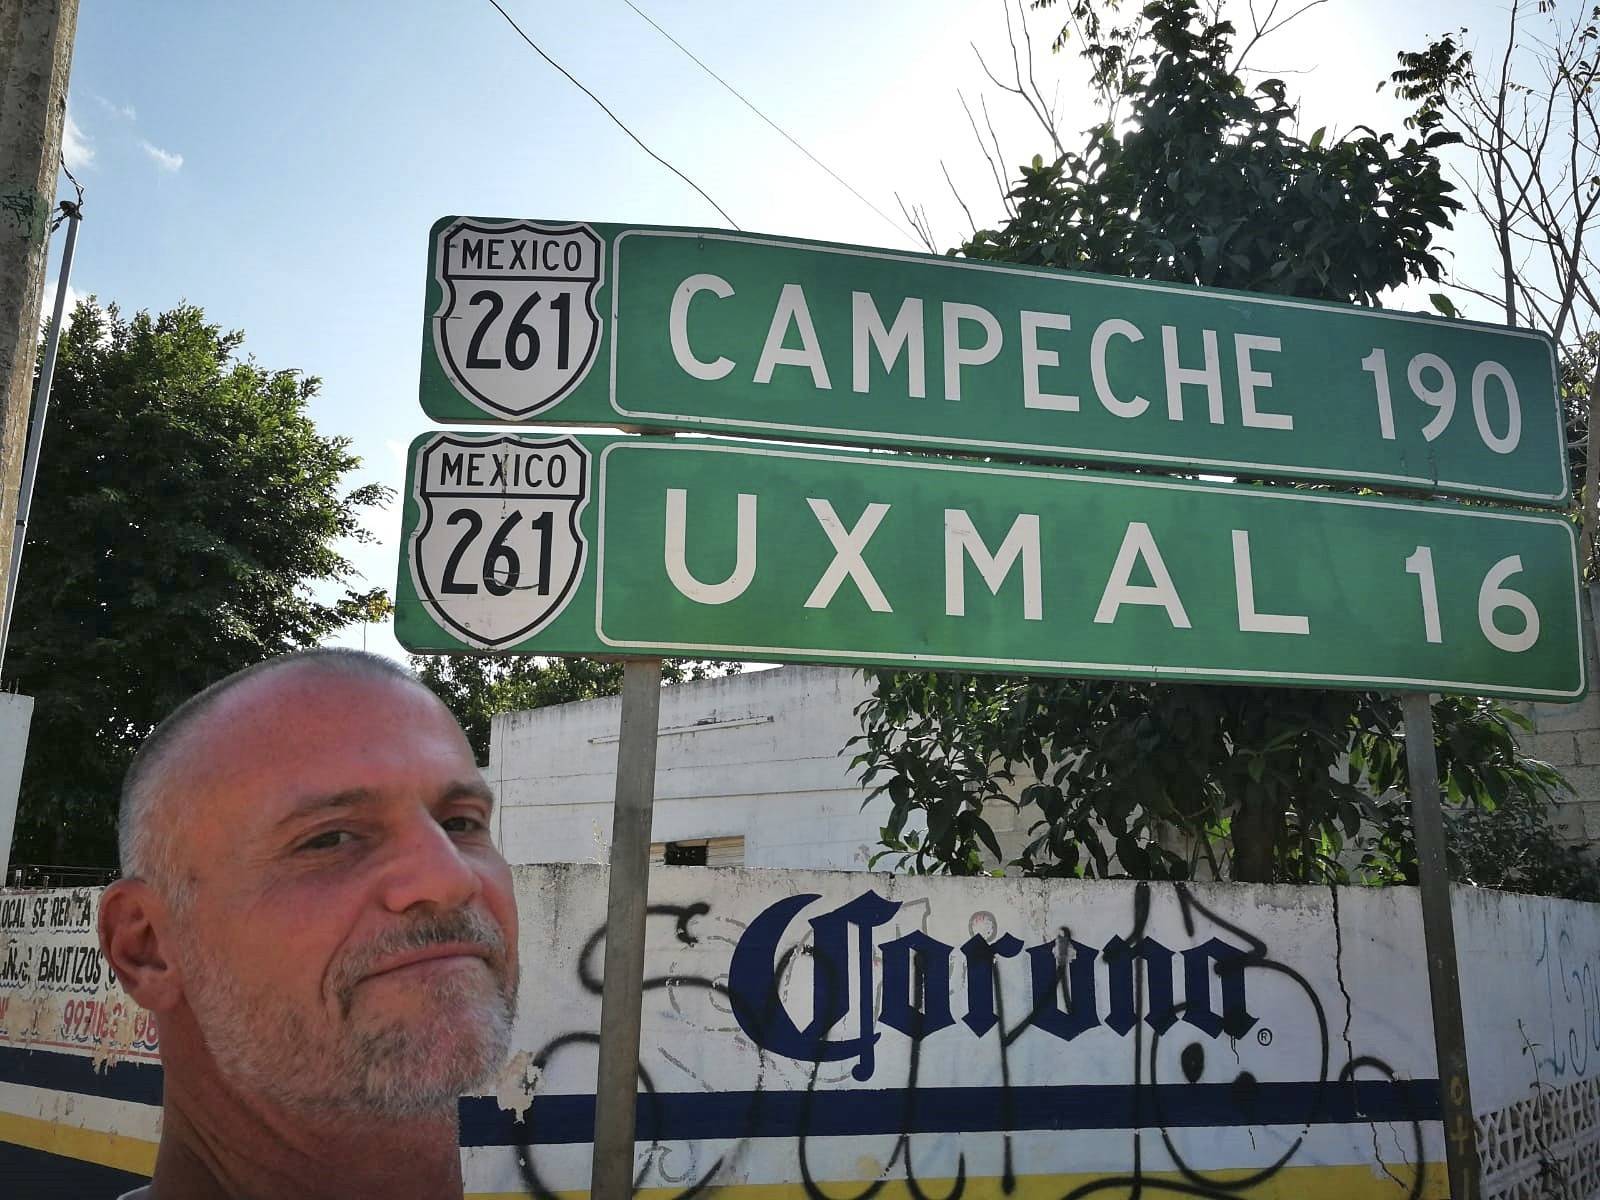 Messico-mexico-corona-campeche-uxmal-viaggiare-trip